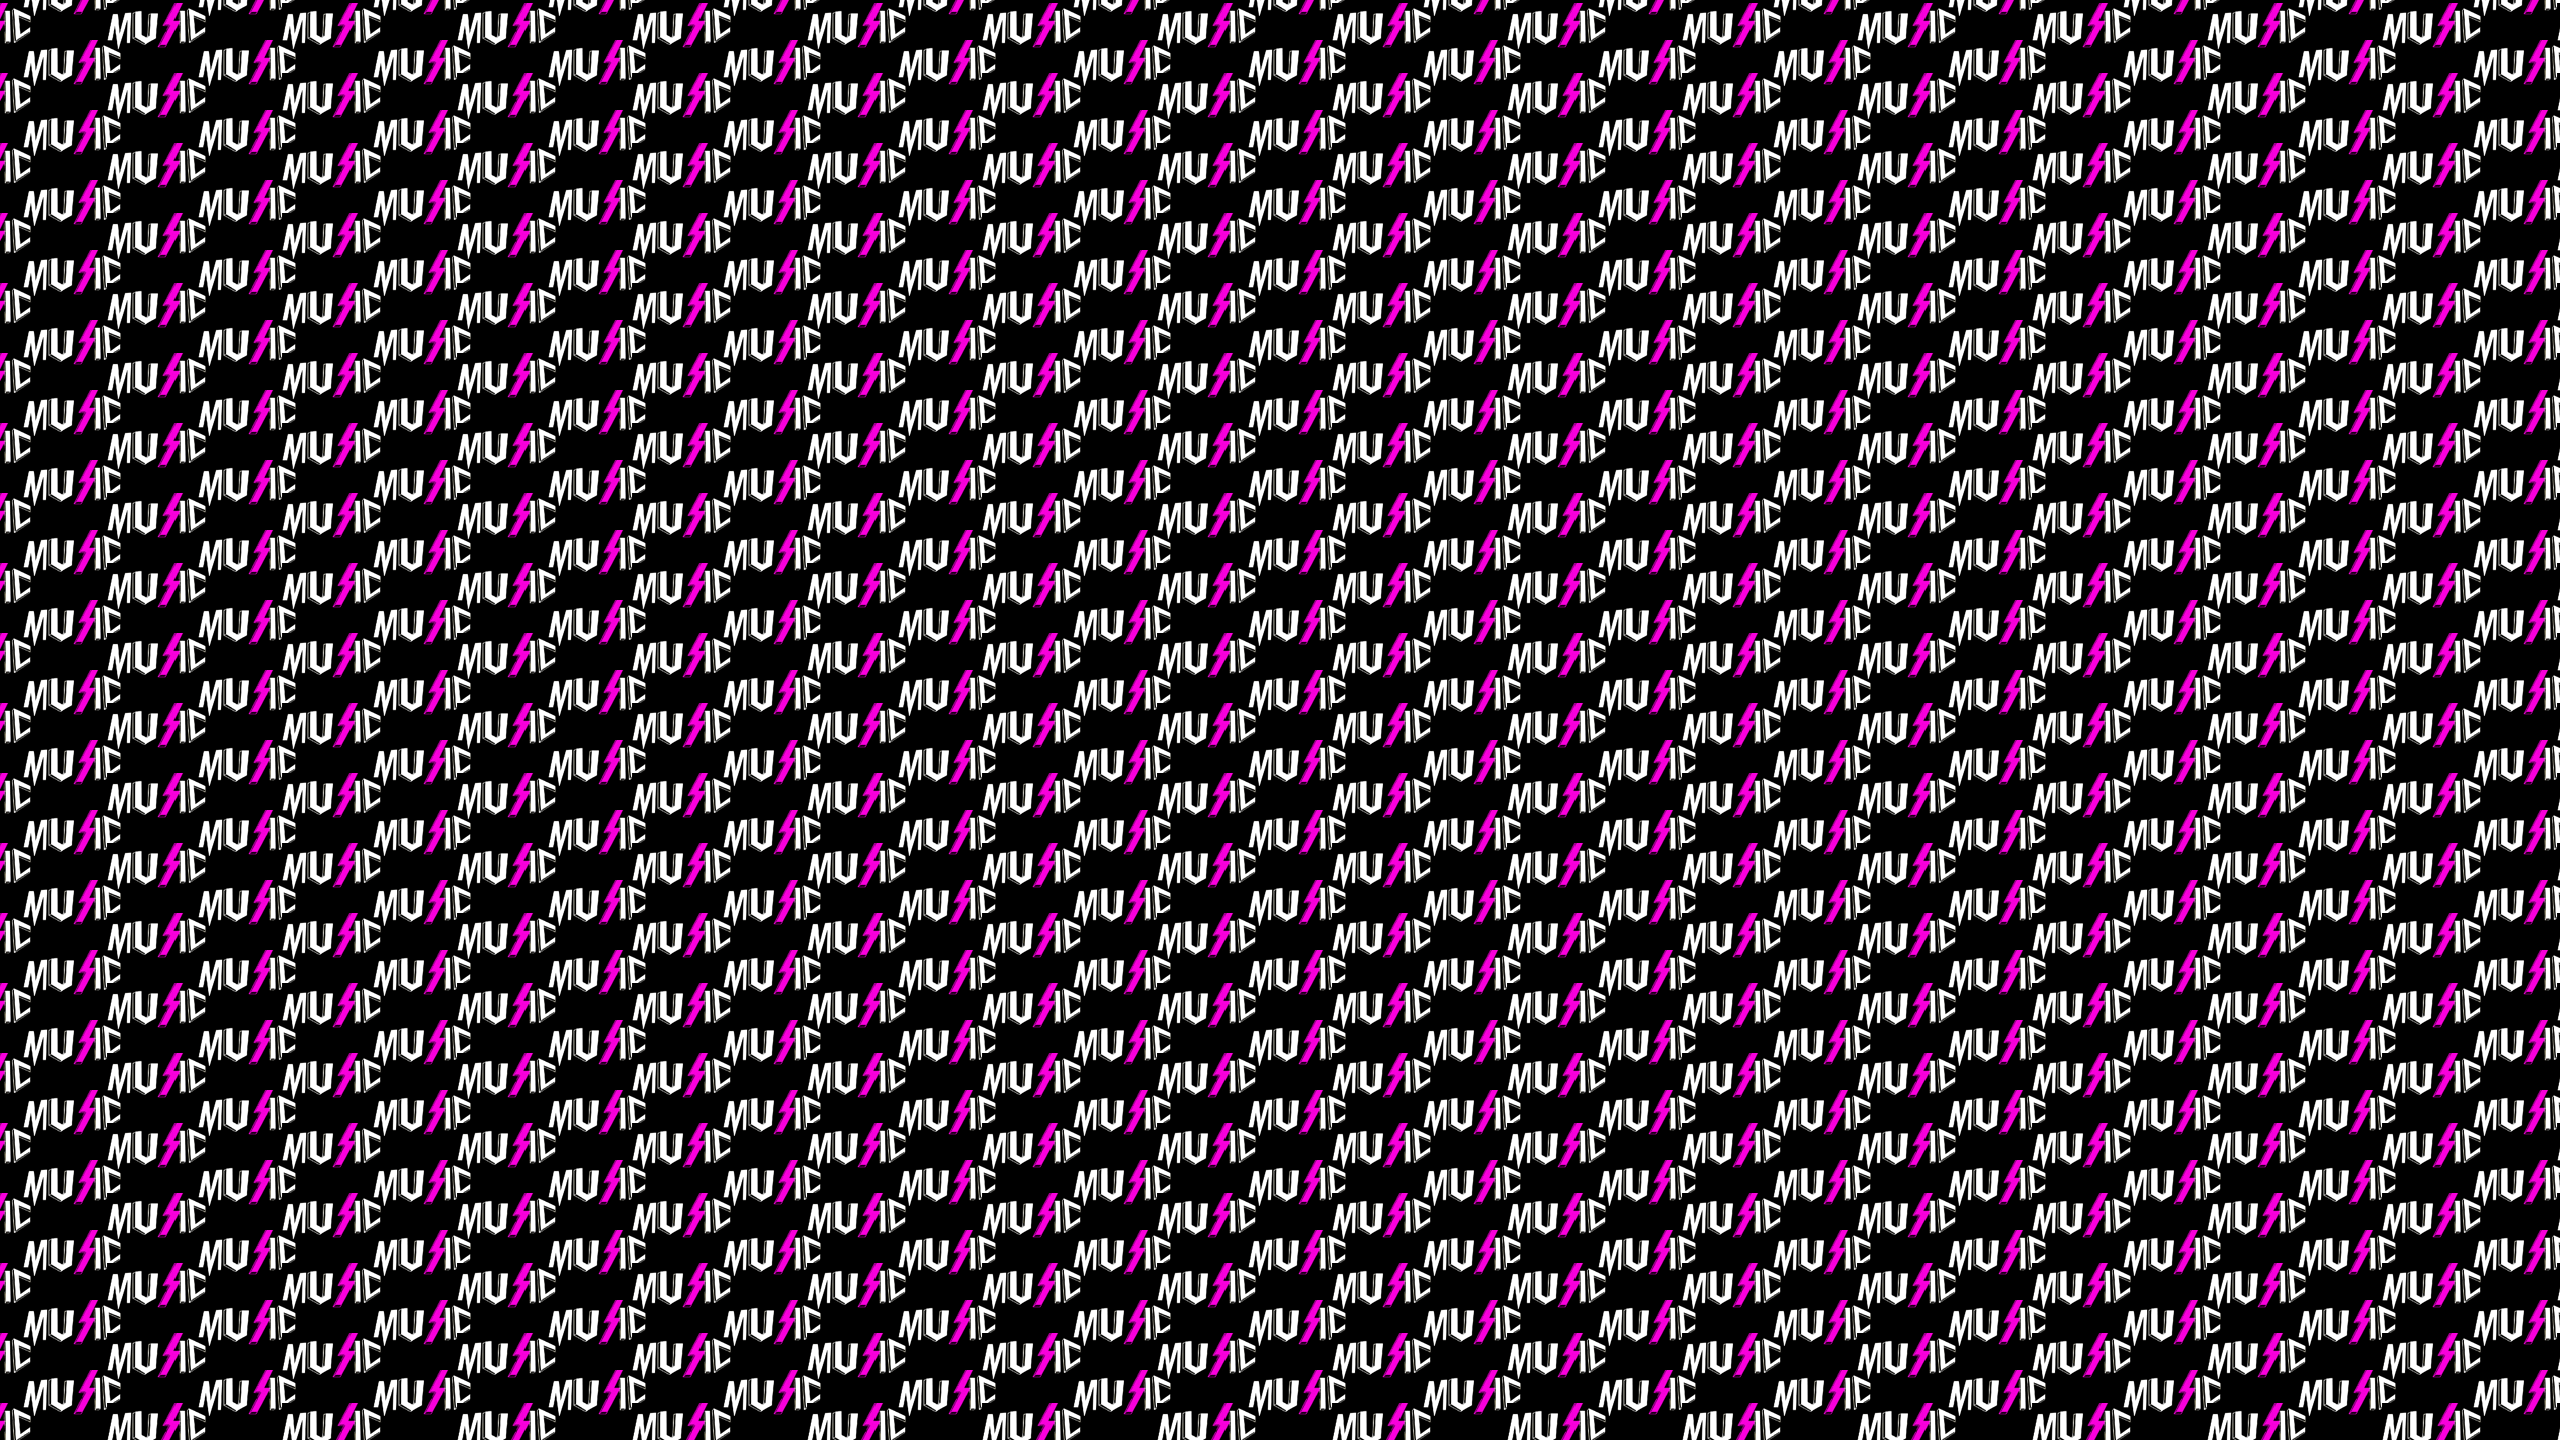 [61+] Pink Music Wallpaper | WallpaperSafari.com